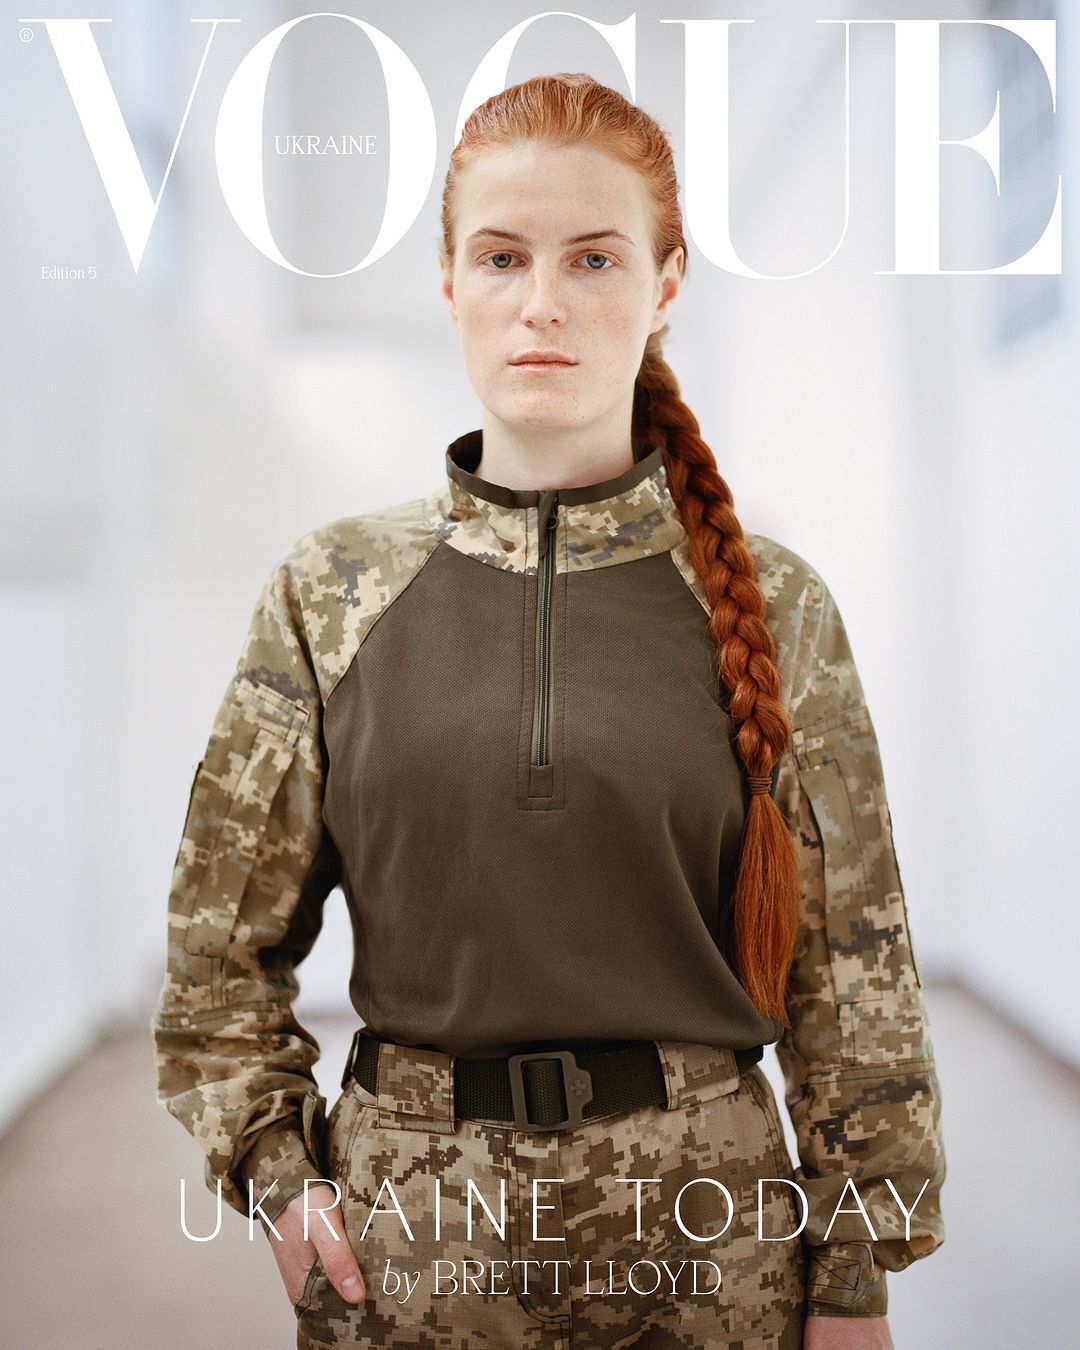 "Может, не будем делать гламур из войны?" В сети разразился скандал вокруг обложки Vogue, где модель позирует в военной форме